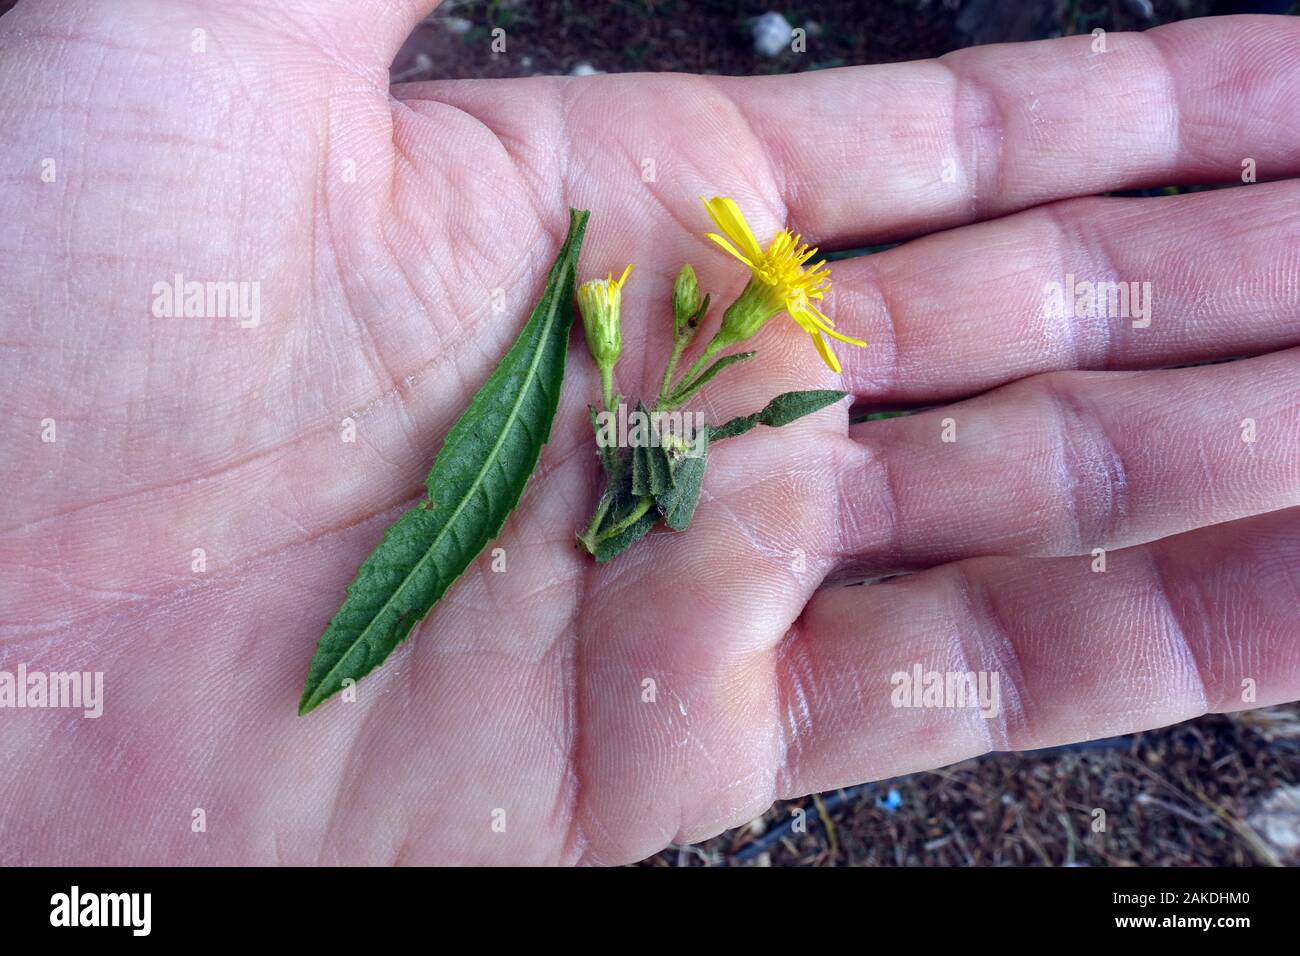 Breitblättrige Klebalant (Dittrichia viscosa subsp Angustifoli) - Blatt und Blüte auf der Handfläche, Bafra, Türkische Republik Nordzypern Stockfoto